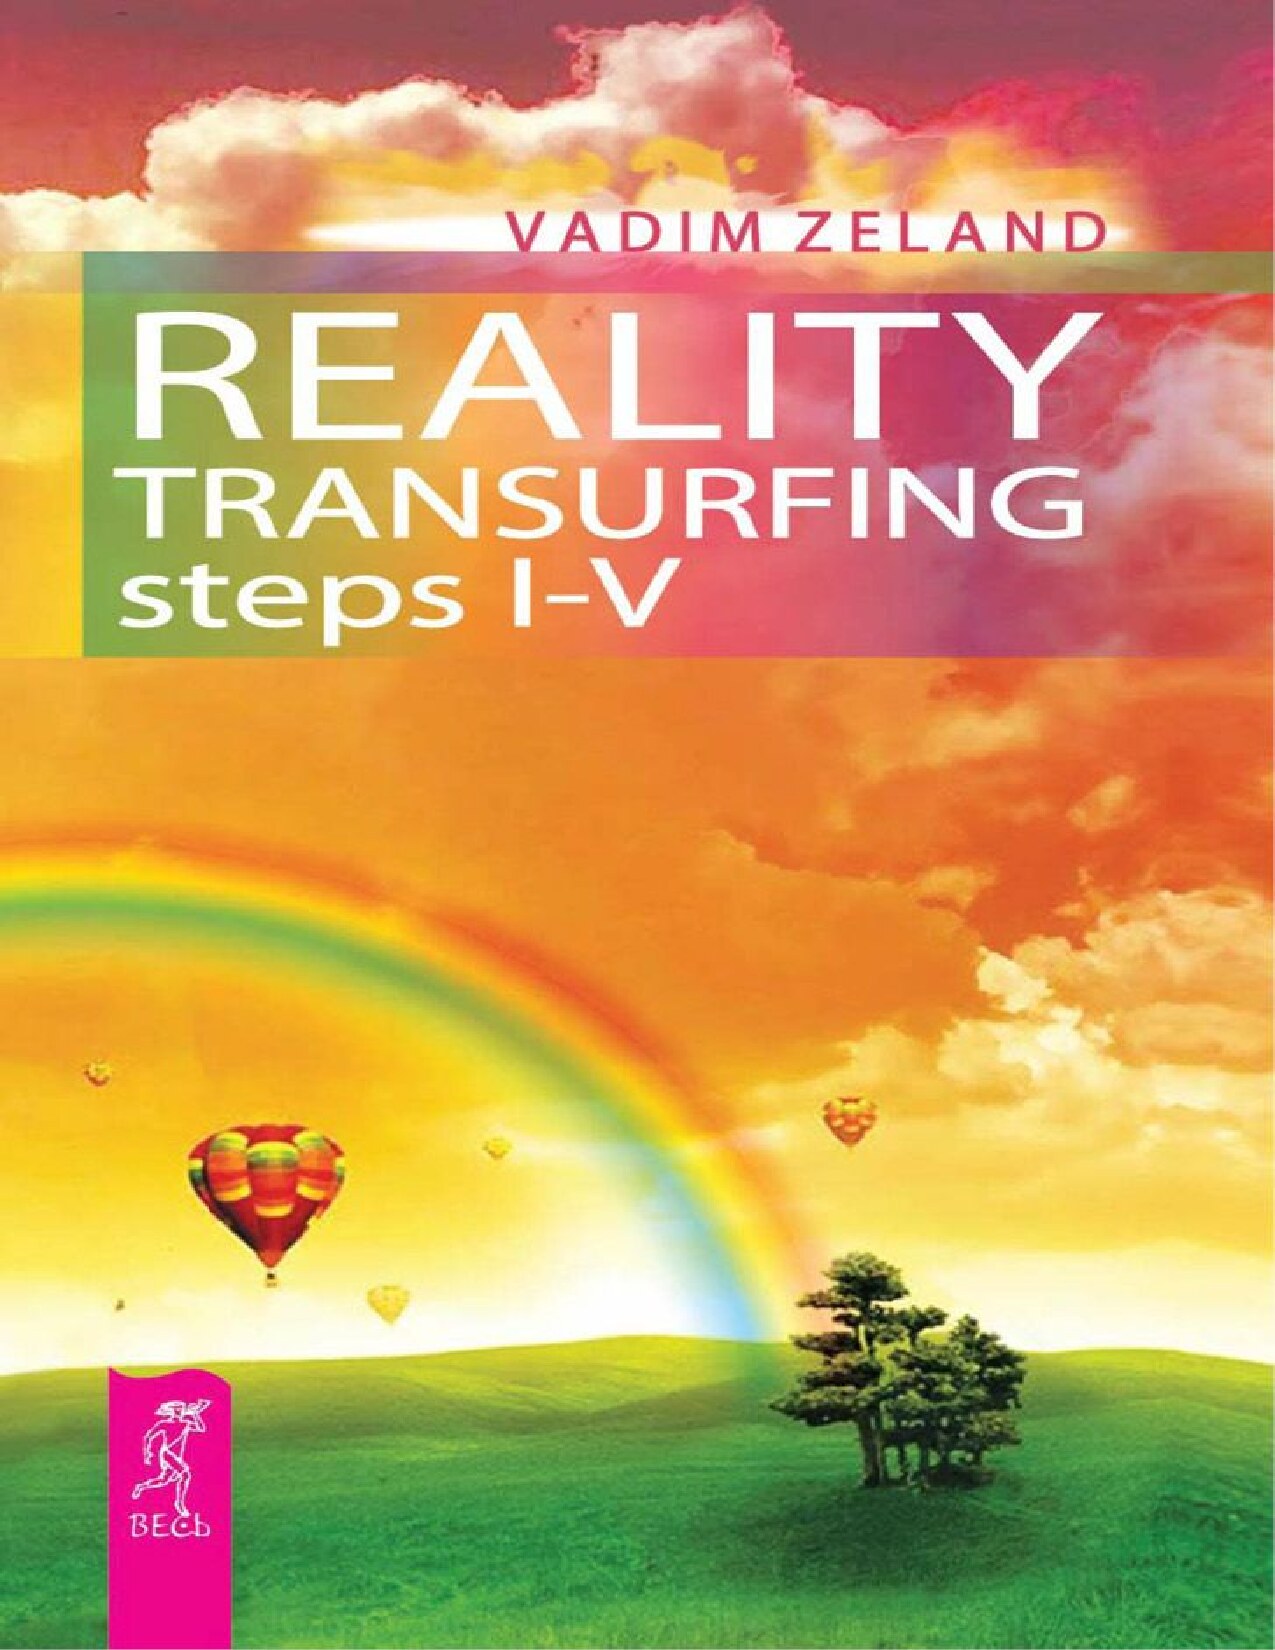 Reality transurfing. Steps I-V